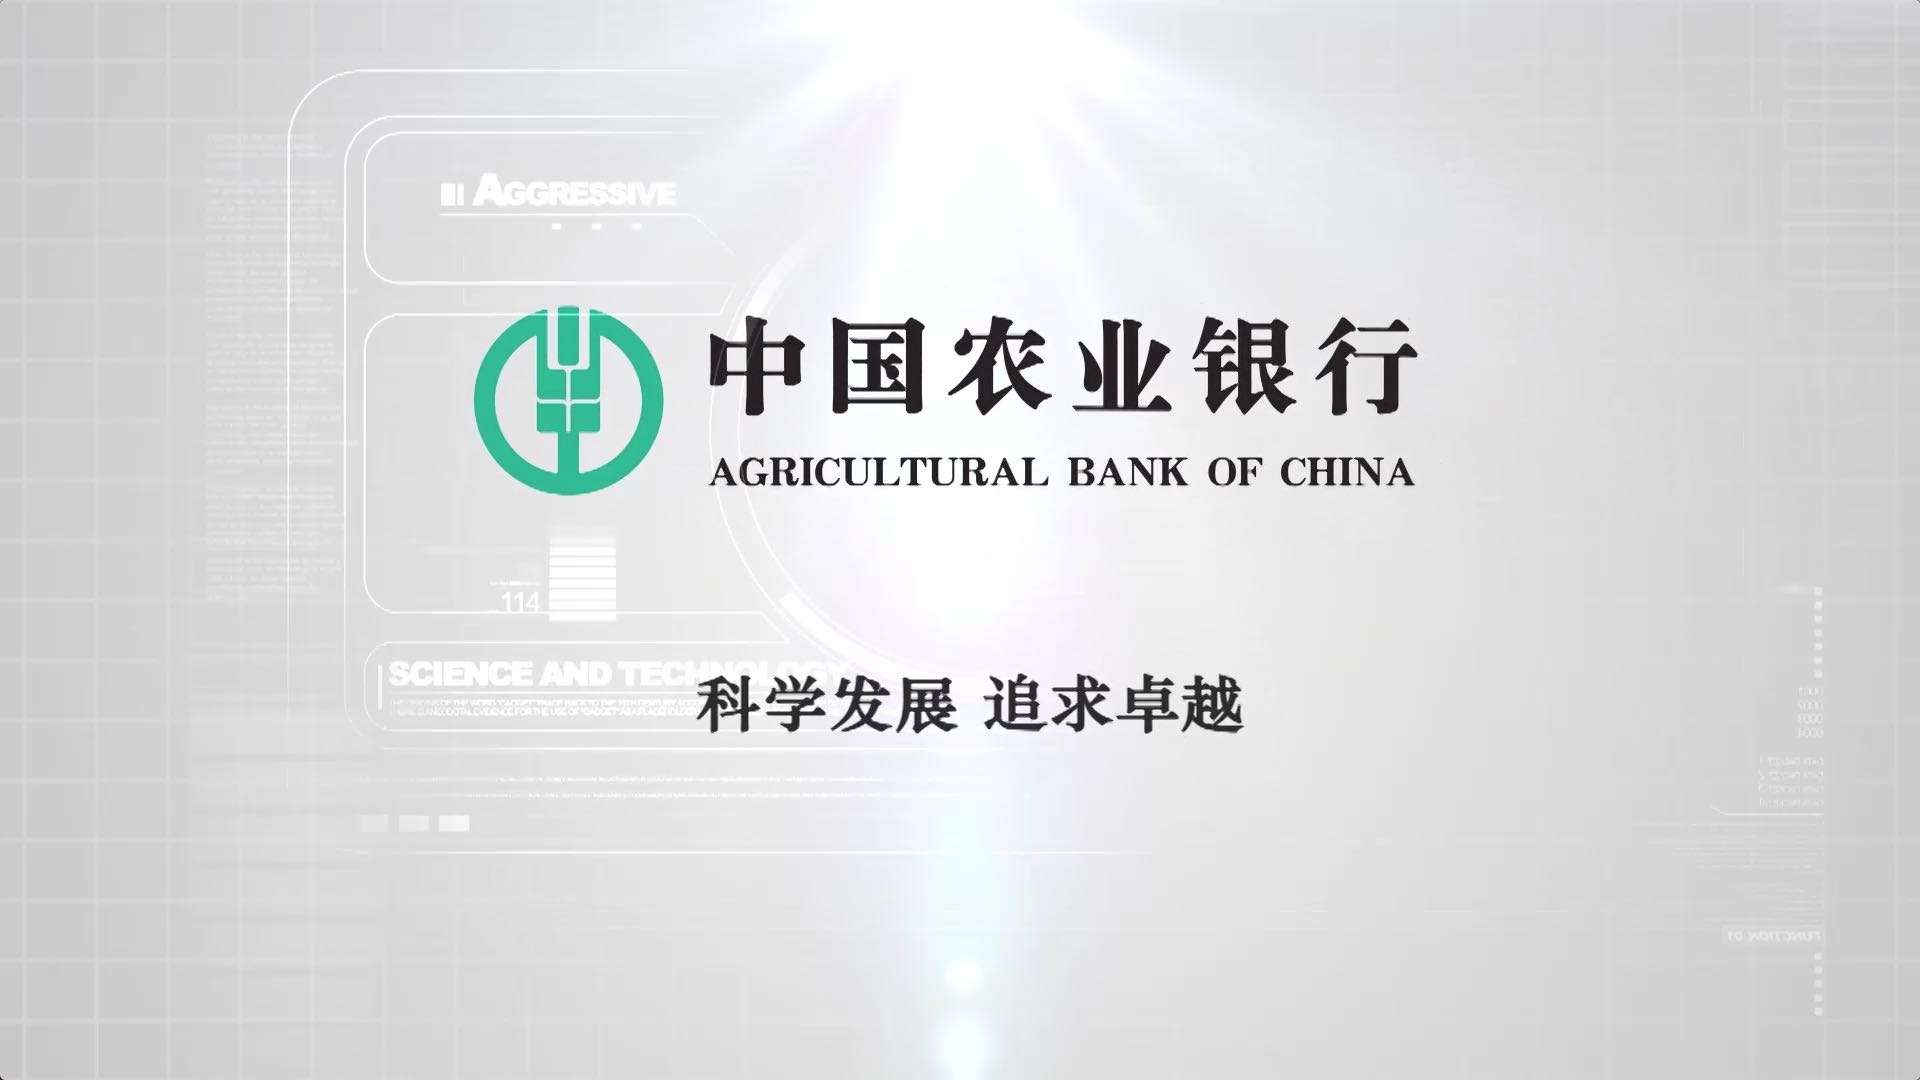 中国农业银行信息科技三十年 宣传片